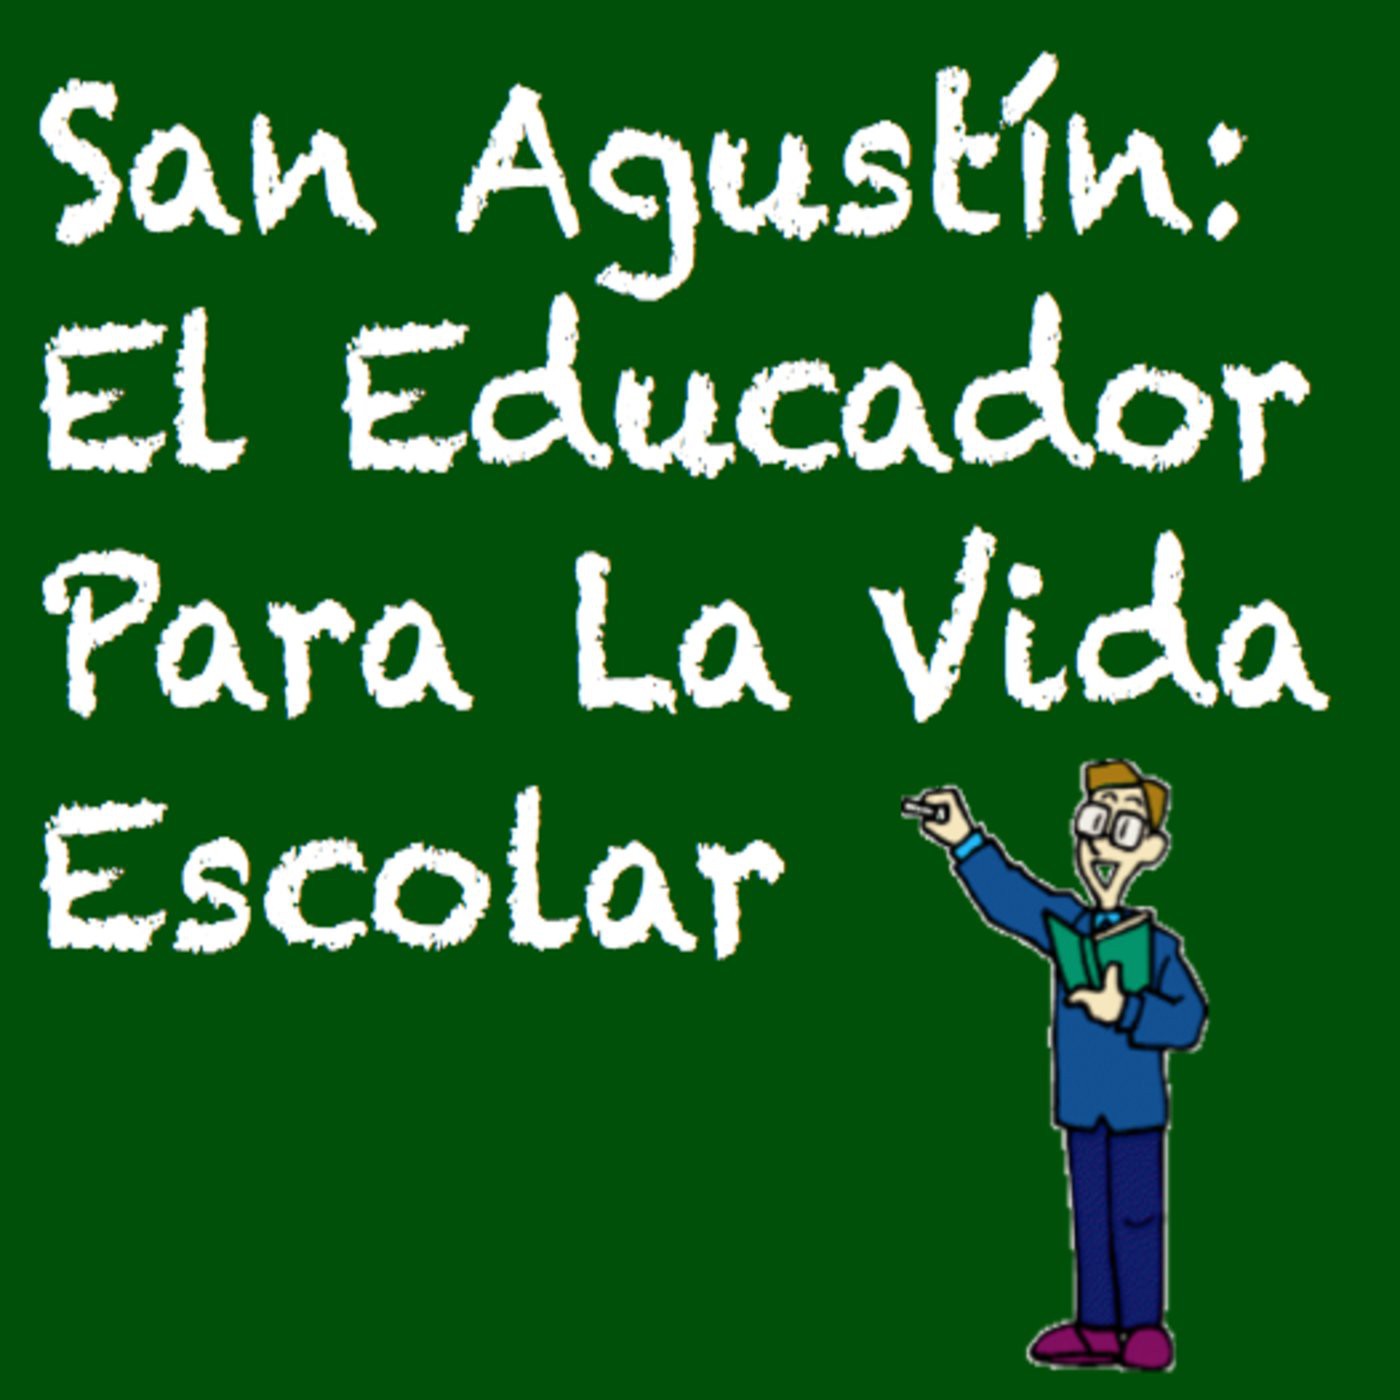 San Agustín El Educador Para La Vida Escolar